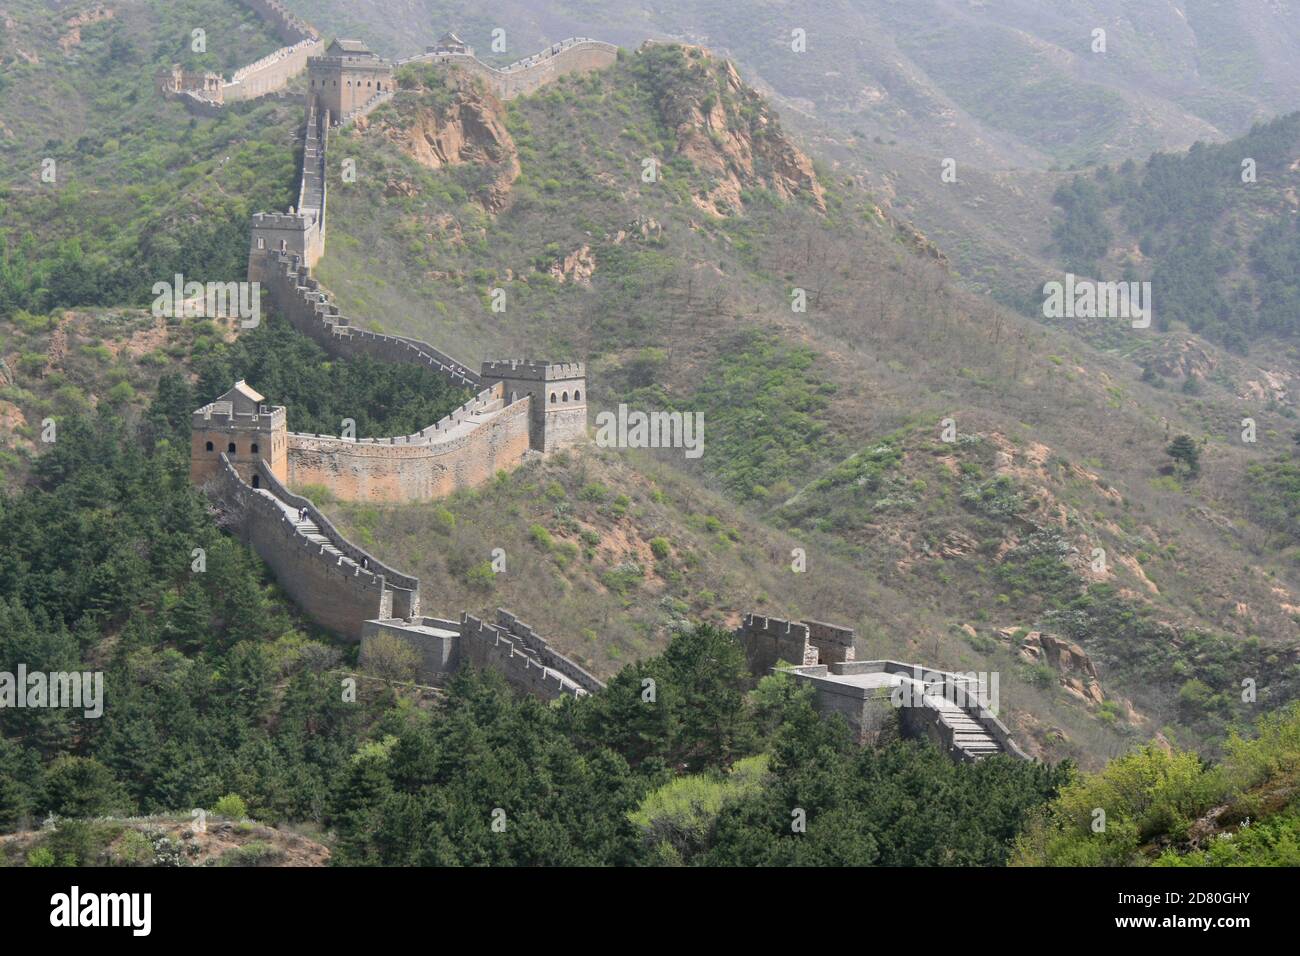 le grand mur de chine à jinshanling (chine) Banque D'Images